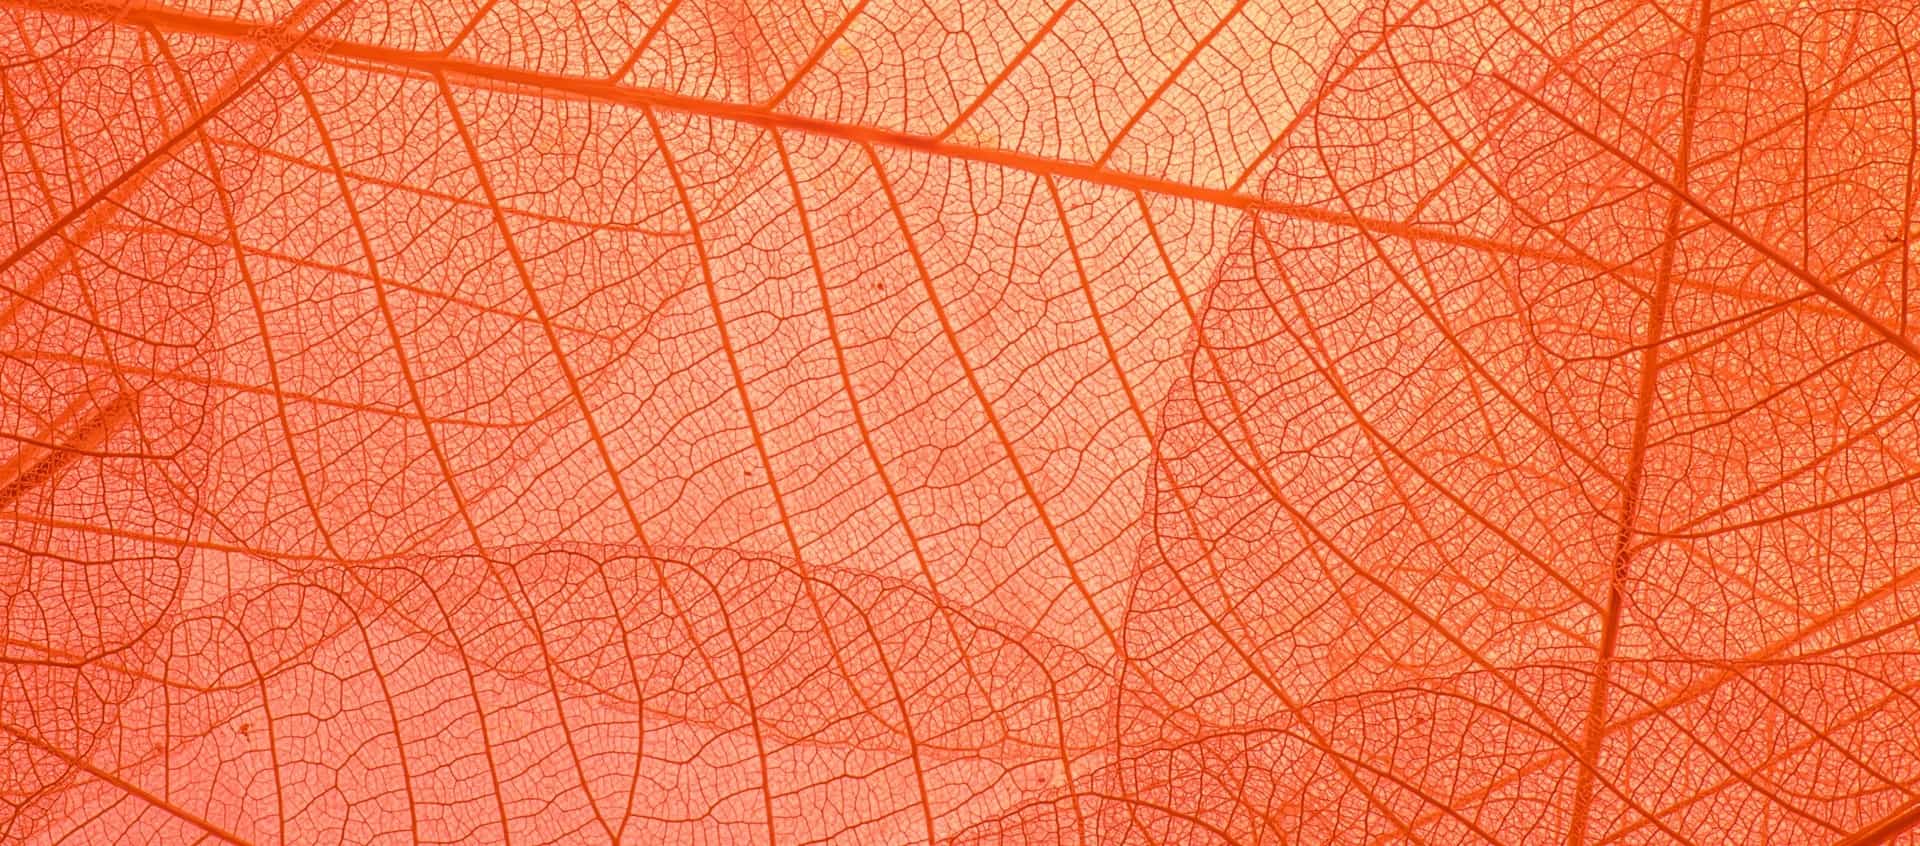 Orange leaves graphic